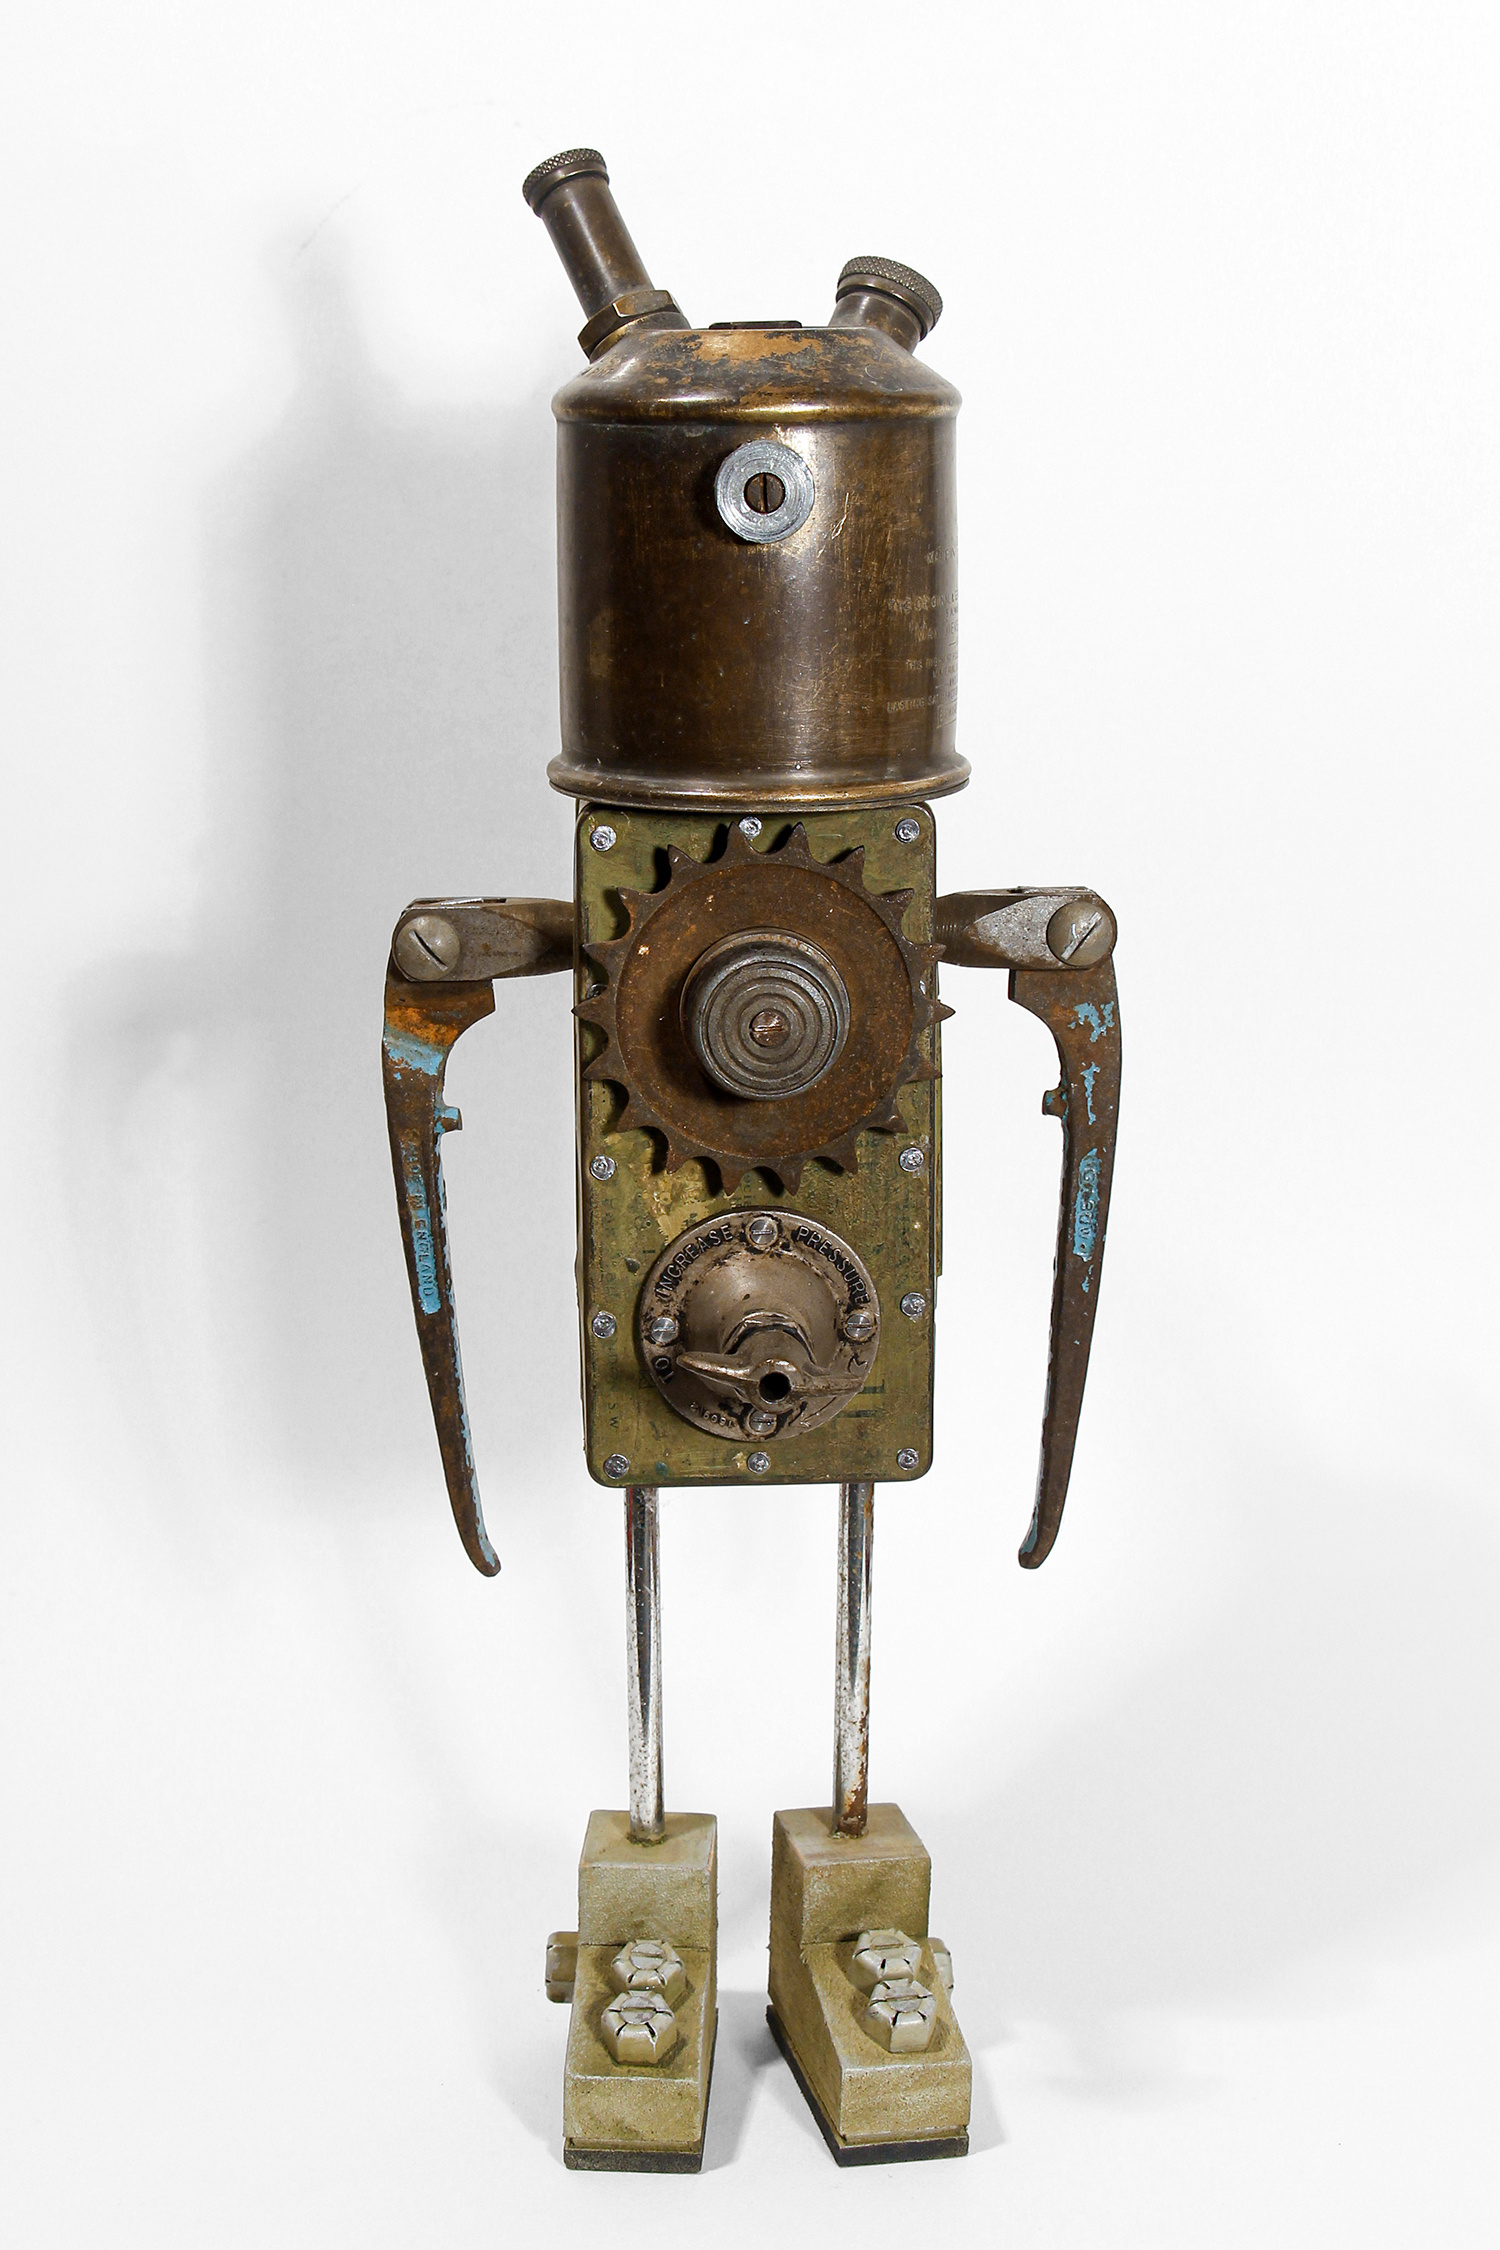 Gen One Robot-Green Bot by Matt Brown